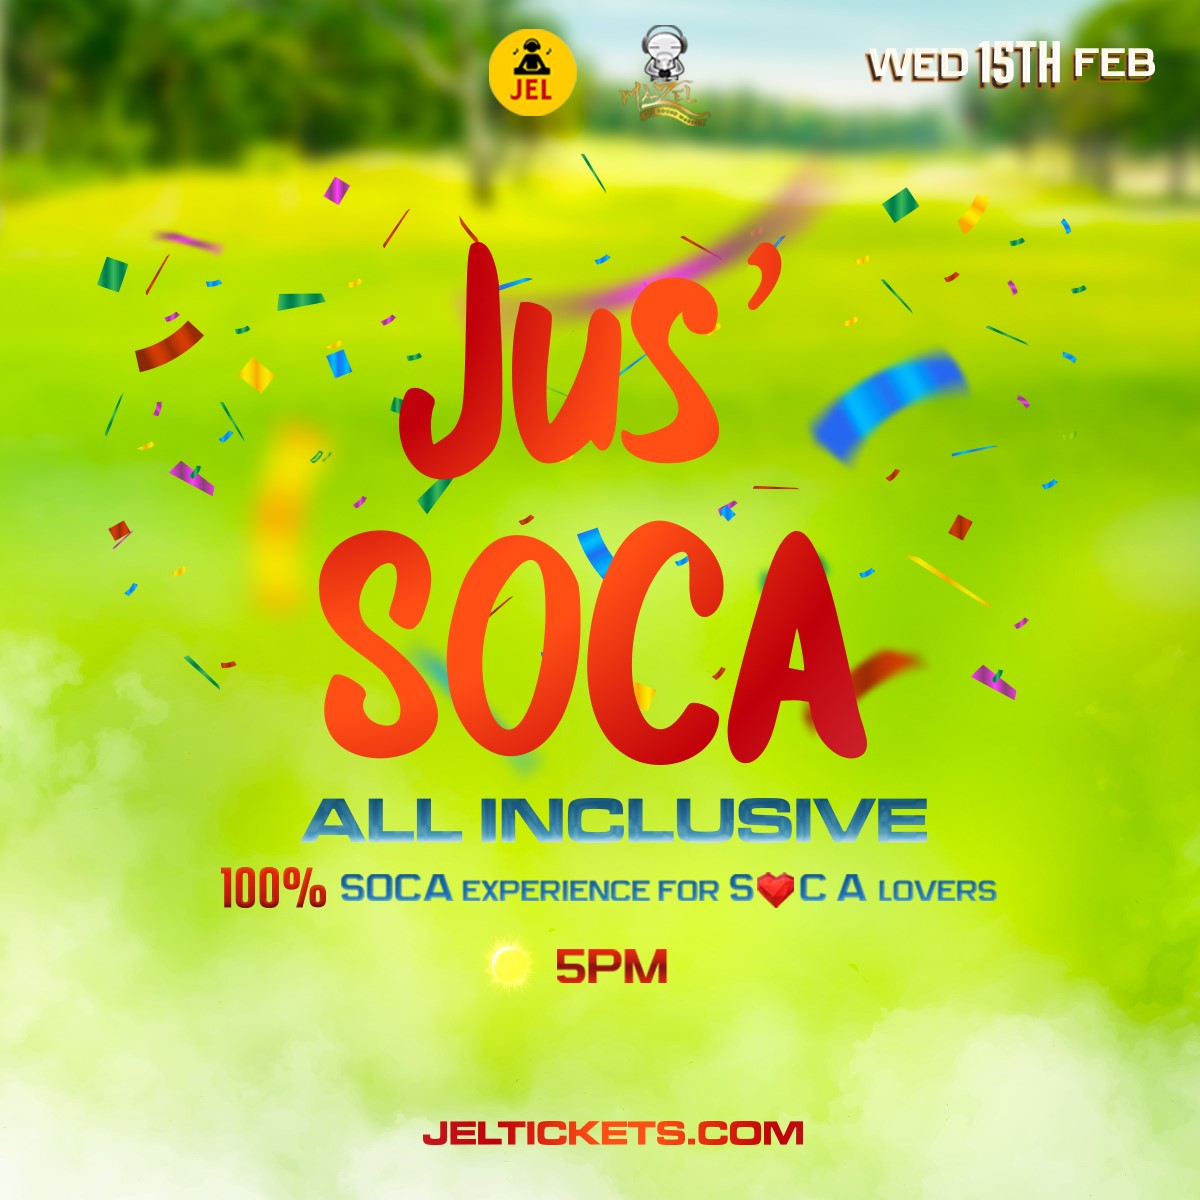 DJ JEL - Jus' Soca All Inclusive Experience  on feb. 15, 17:00@Z Patio Trinidad - Compra entradas y obtén información enwww.fetefinders.com tickets.fetefinders.com